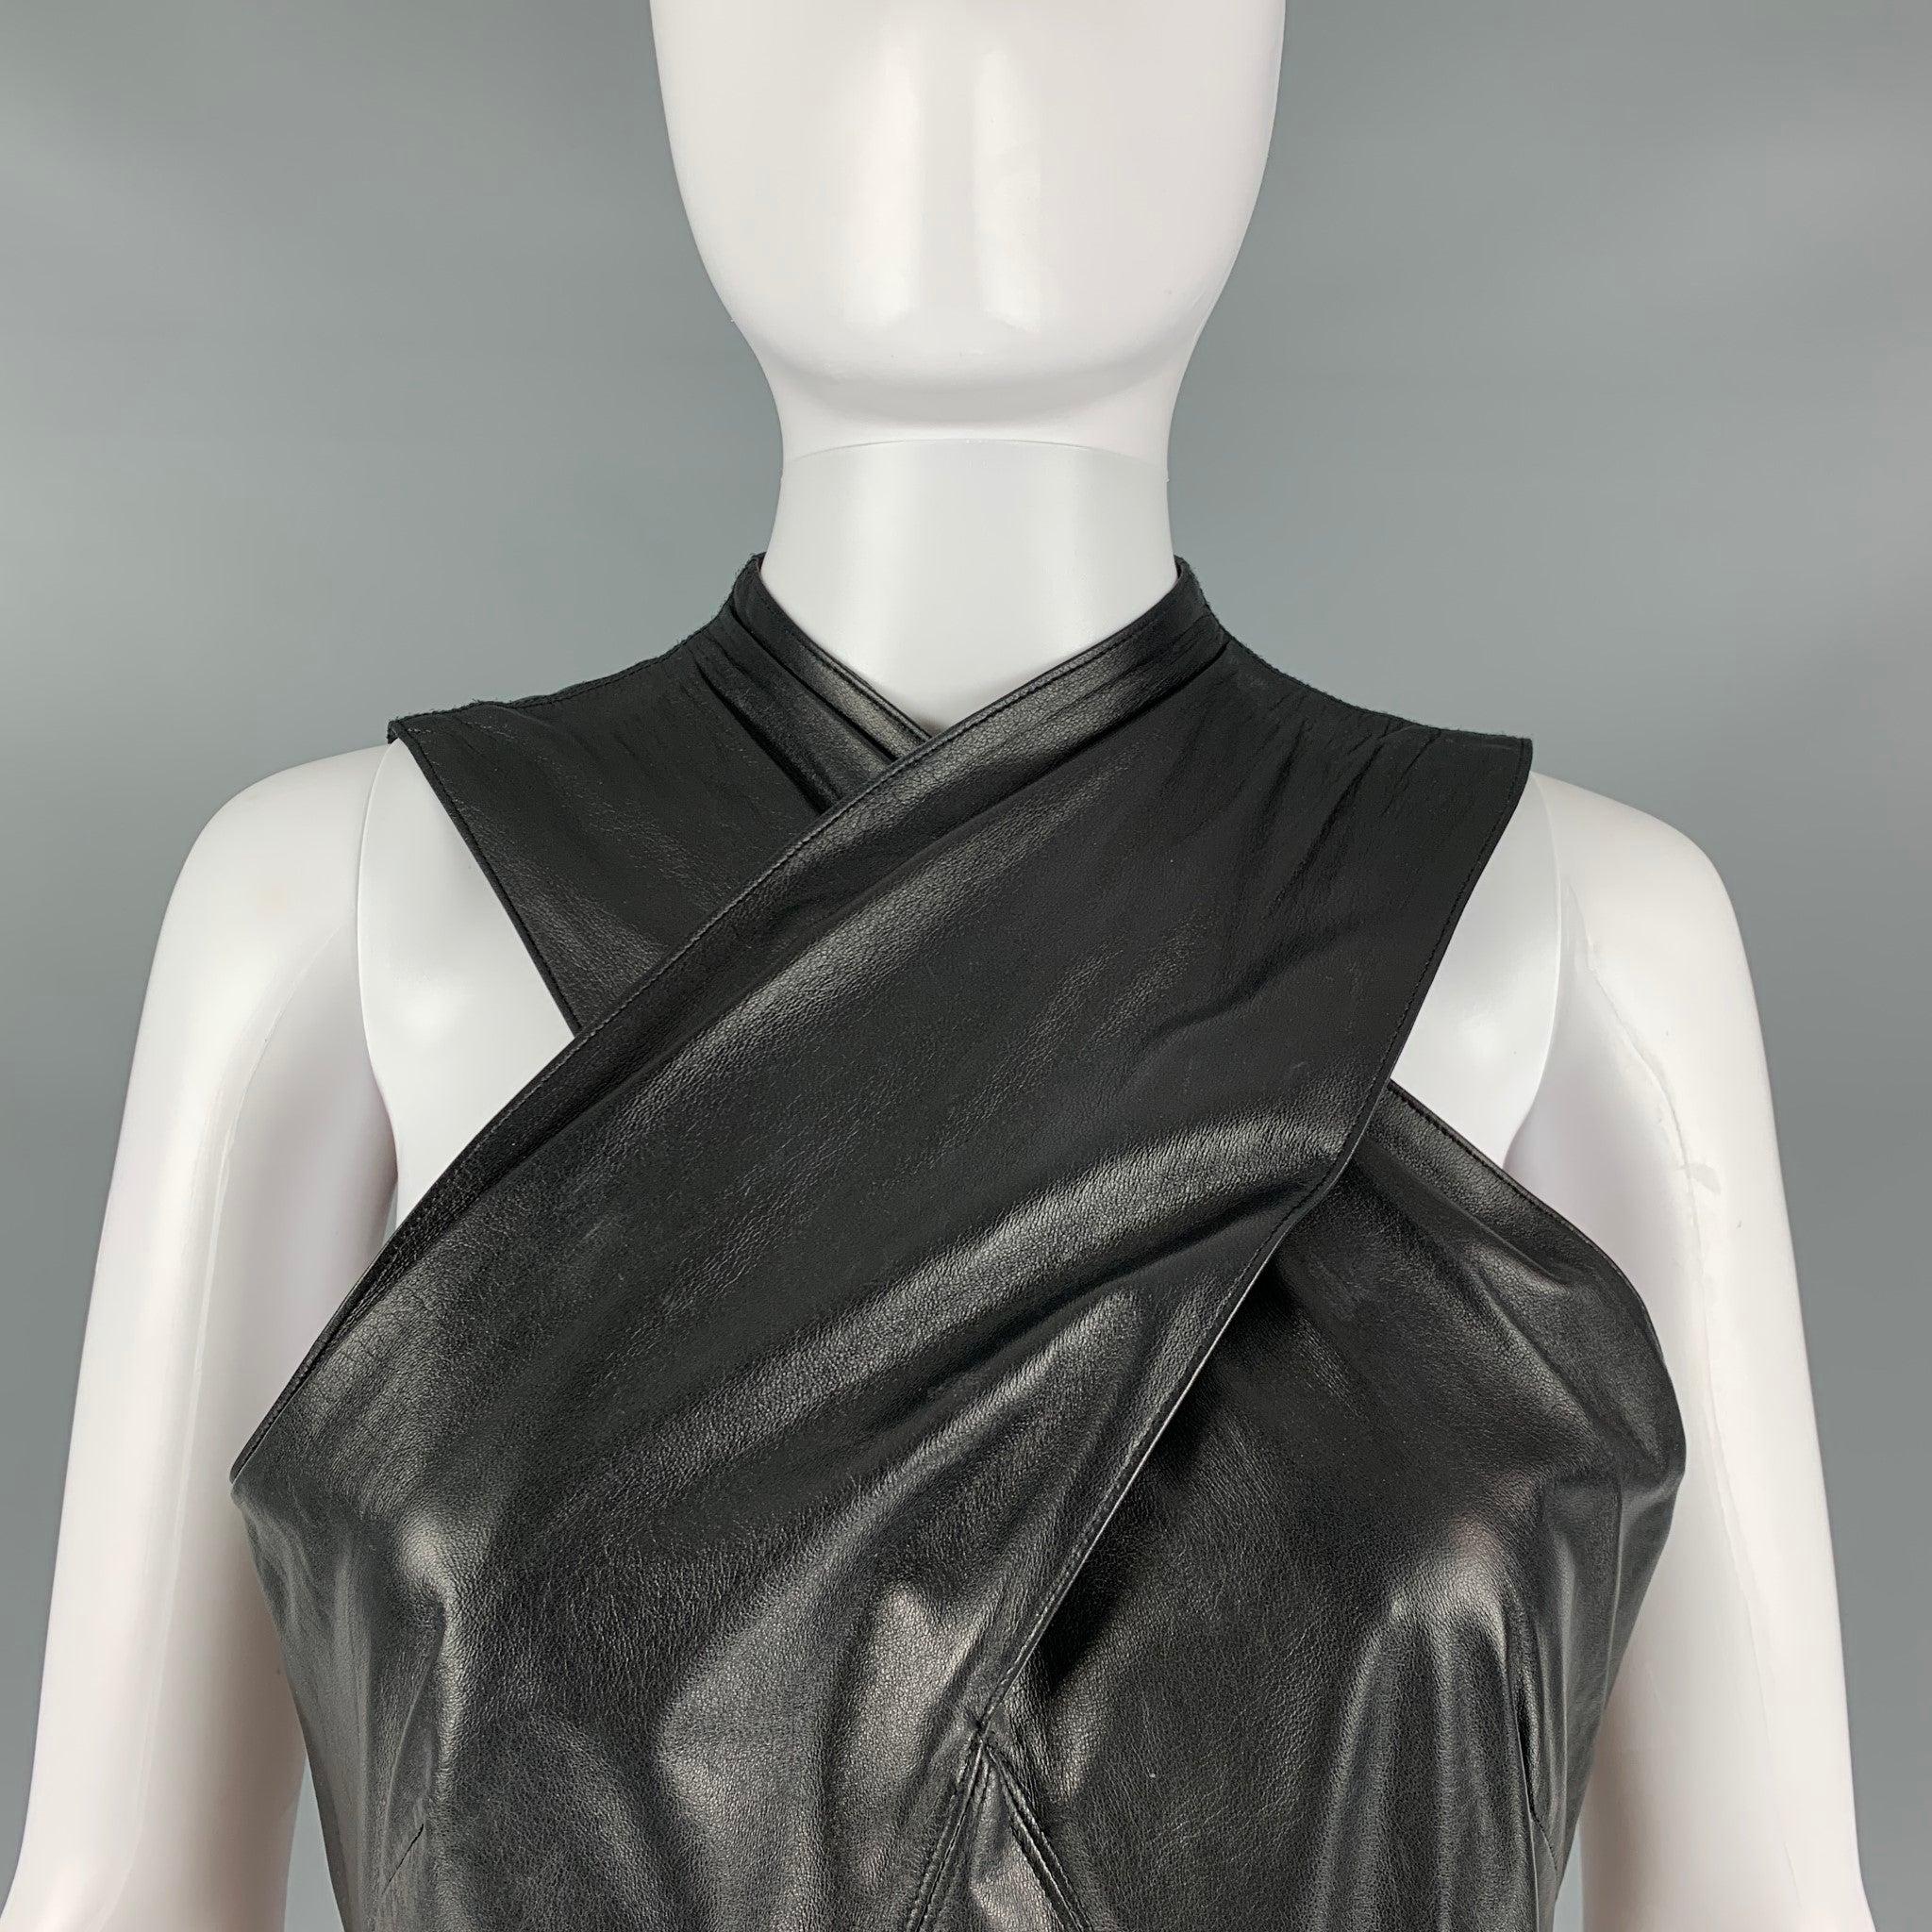 Das Kleid der RALPH LAUREN COLLECTION 2011 aus schwarzem Lammleder hat eine kreuzförmige Bleistift-Silhouette und wird am Rücken mit einem Reißverschluss geschlossen.
 Made in USA.Excellent Pre-Owned Condition. 

Markiert:  8 

Abmessungen: 
